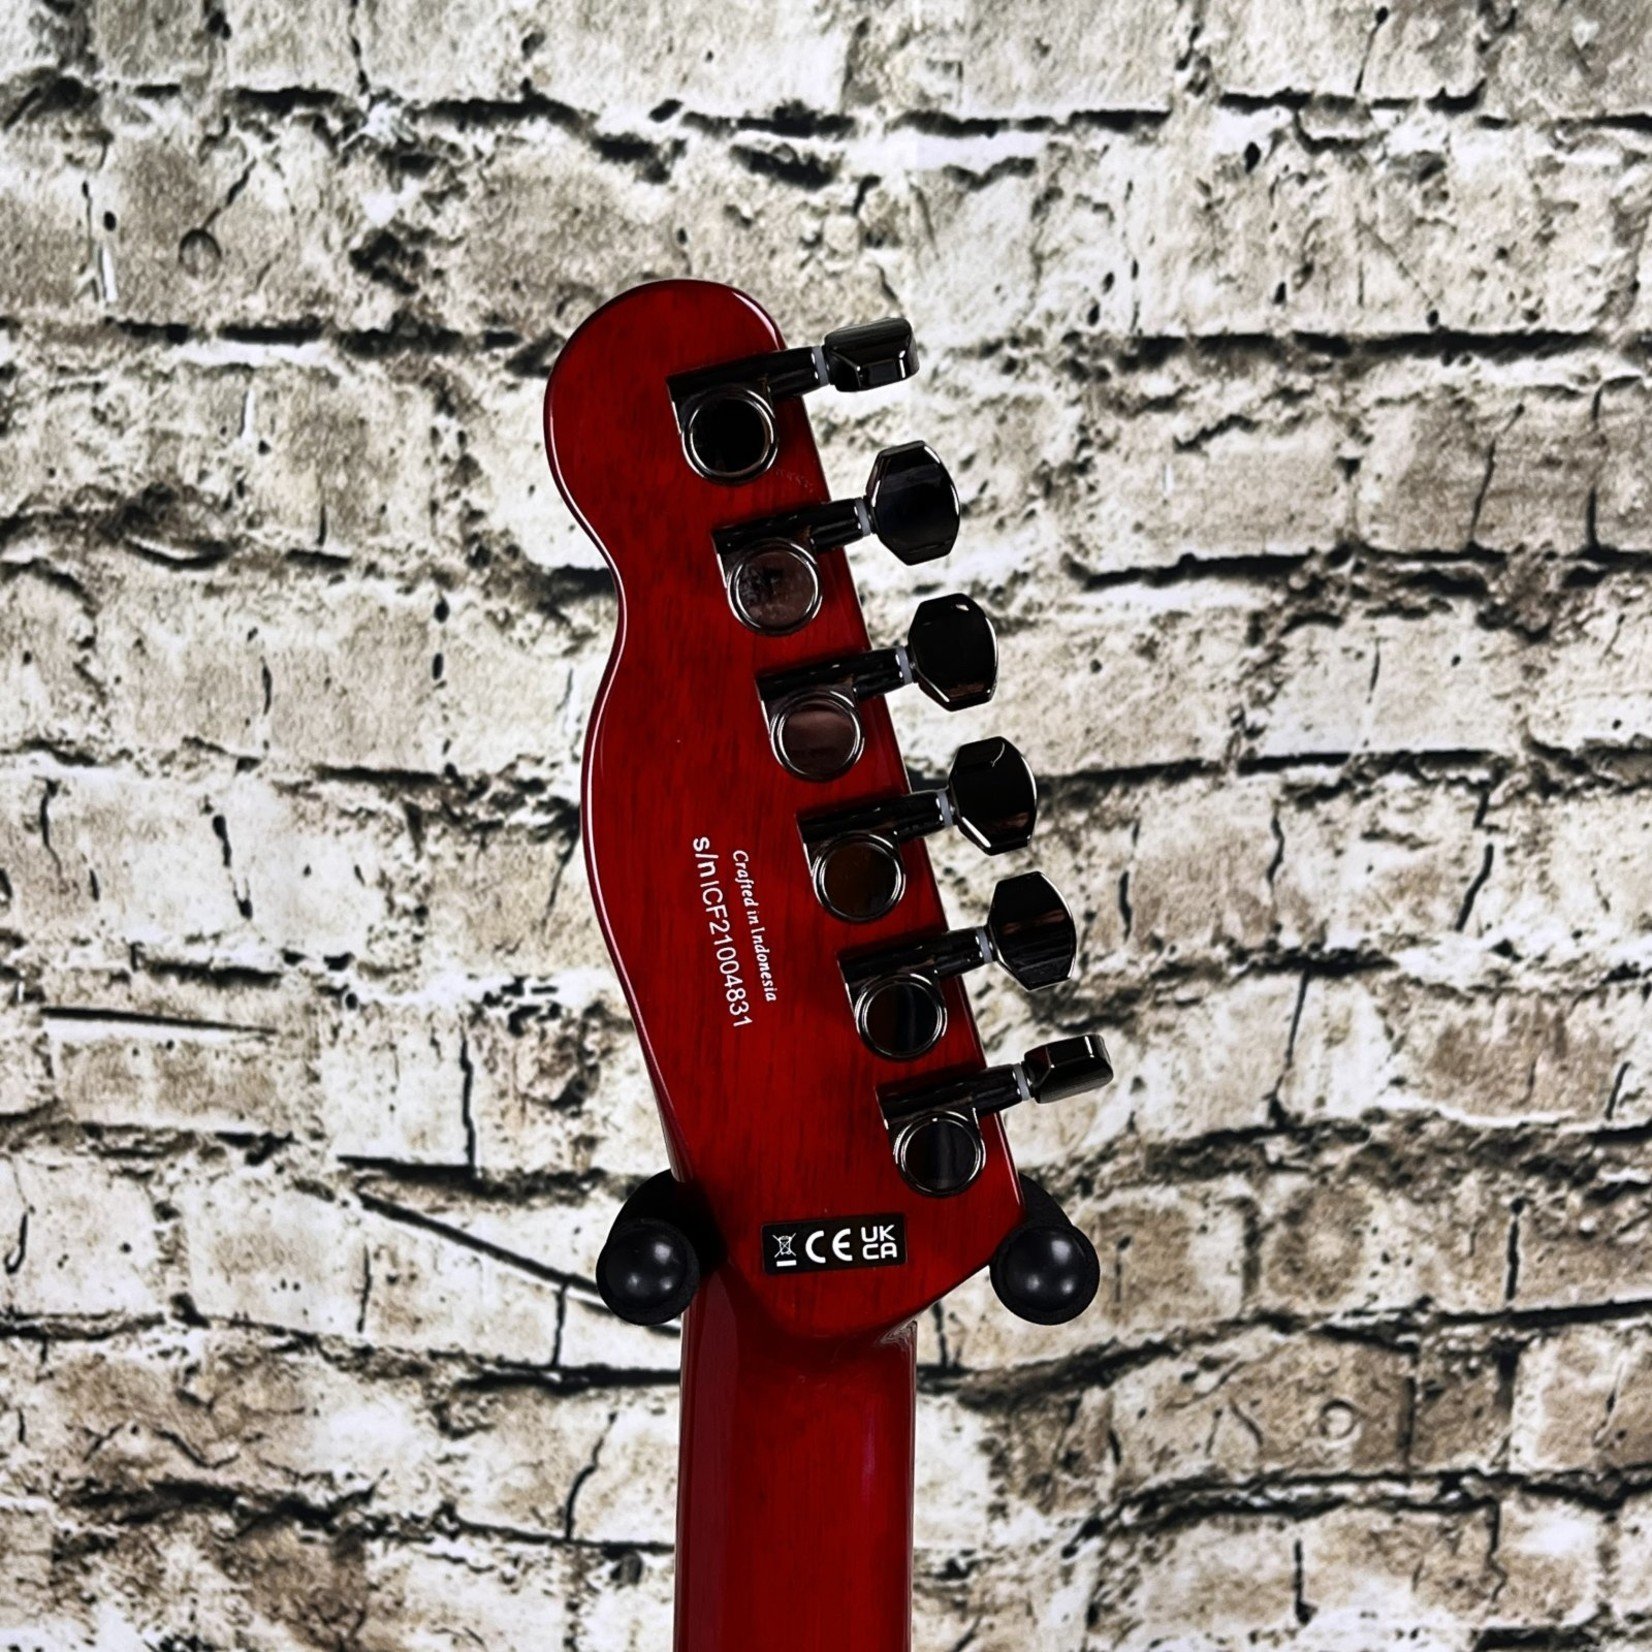 Fender Special Edition Custom Telecaster FMT HH - Crimson Red Transparent